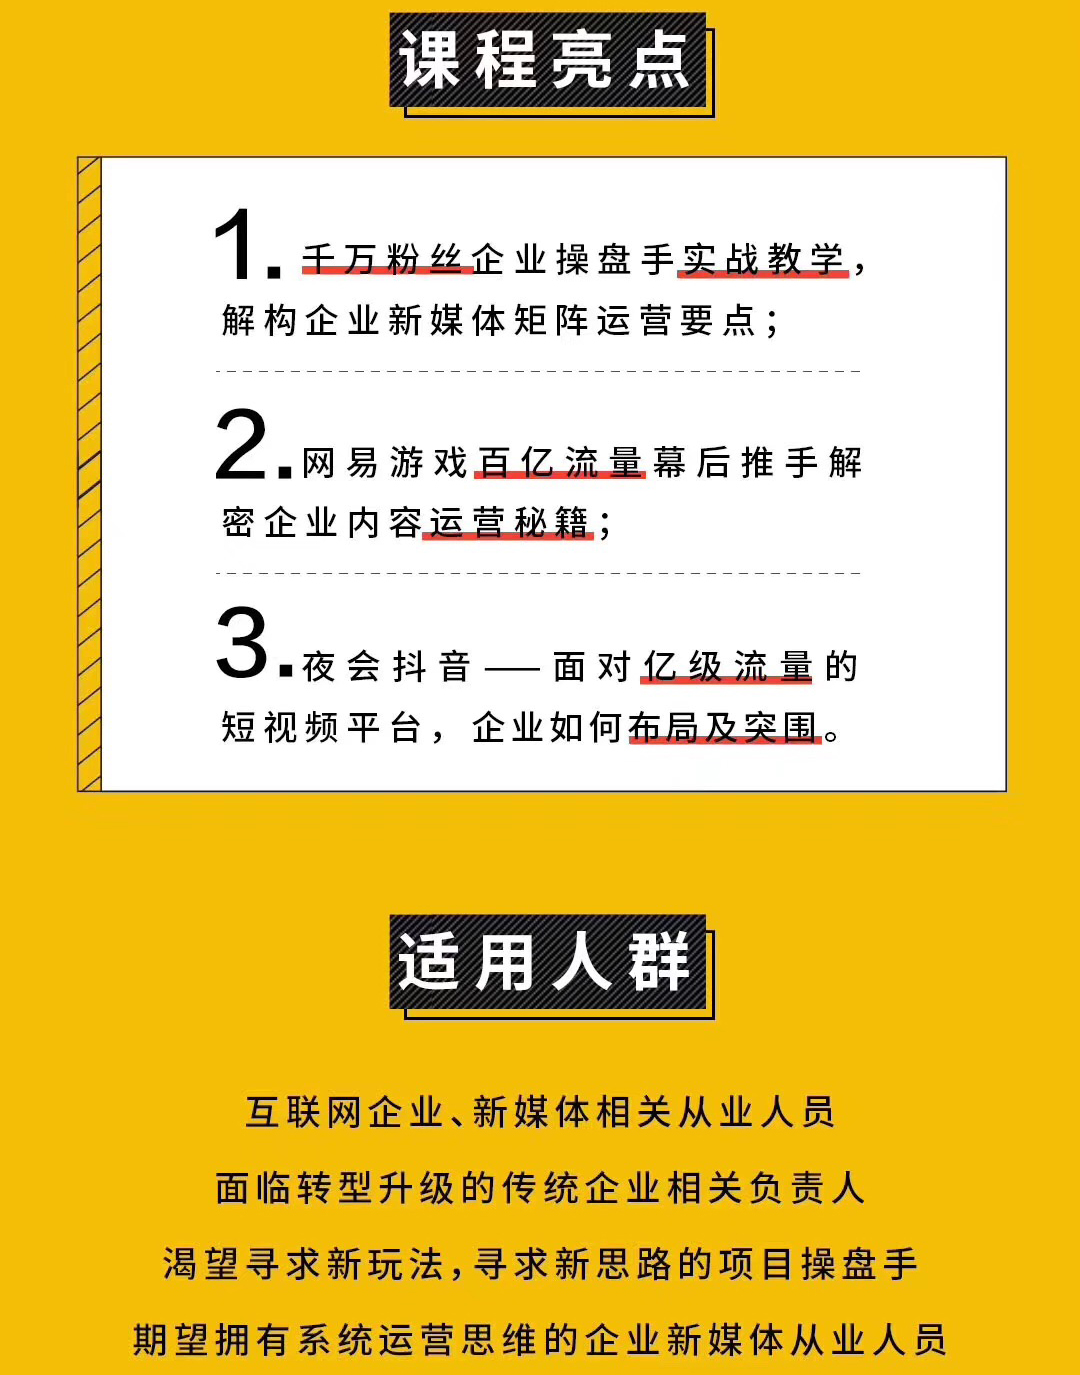 2019CNMO企业新媒体首席运营官弯弓特训营第八期（广州）